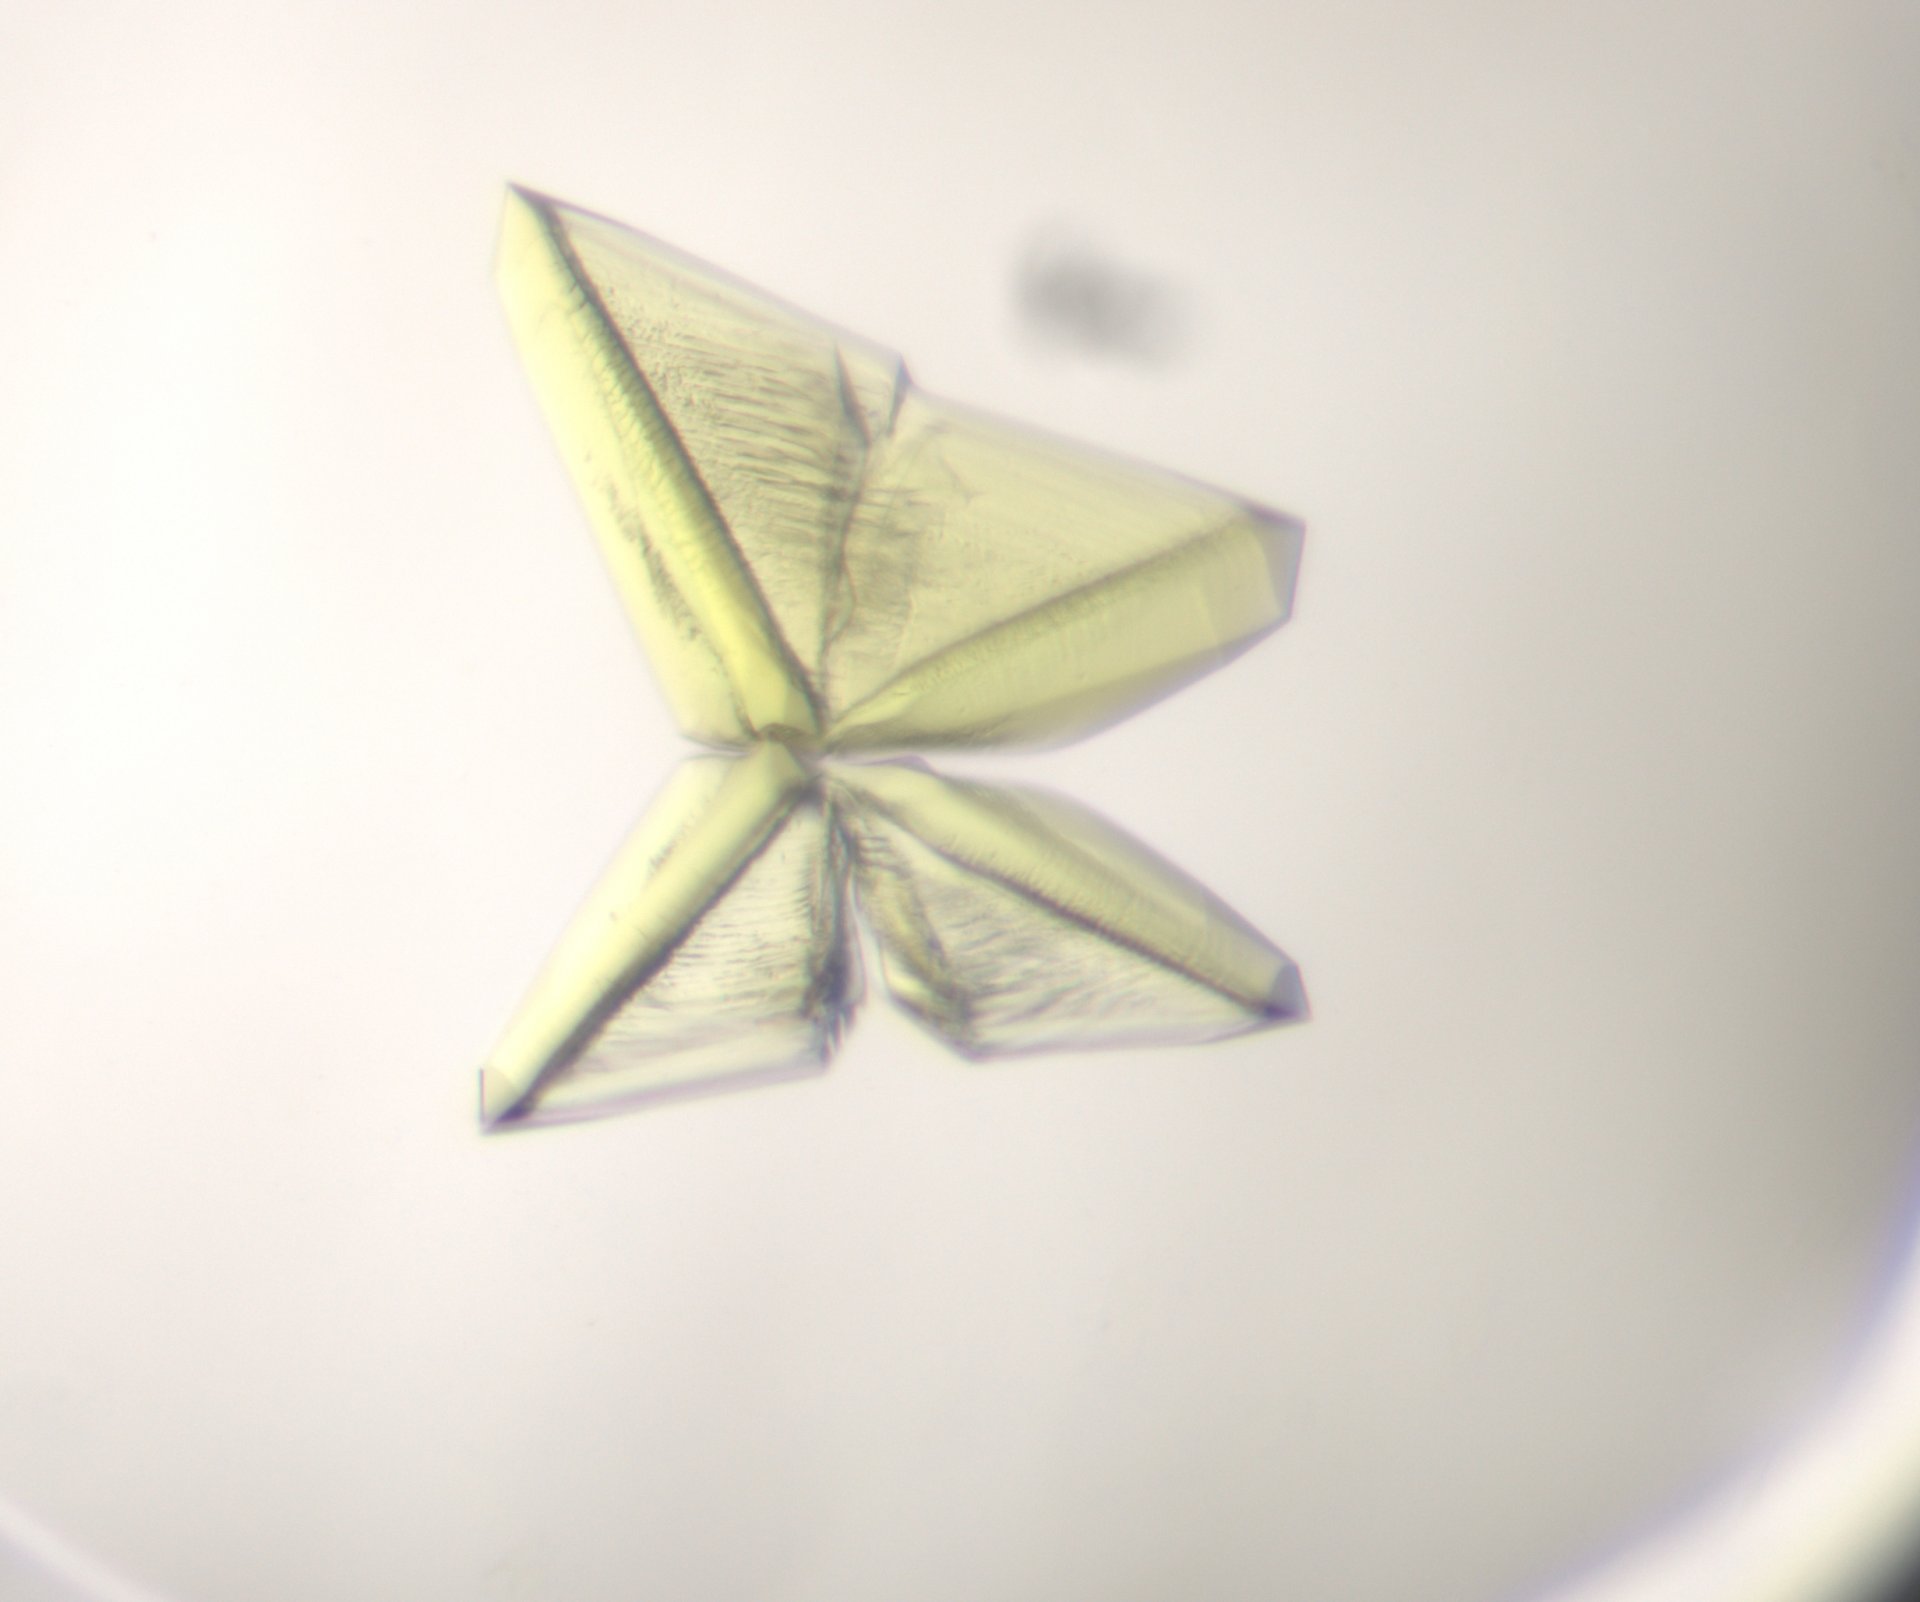 Ein Proteinkristall (© Max-Planck-Institut für Marine Mikrobiologie, Bremen / Olivier Lemaire)